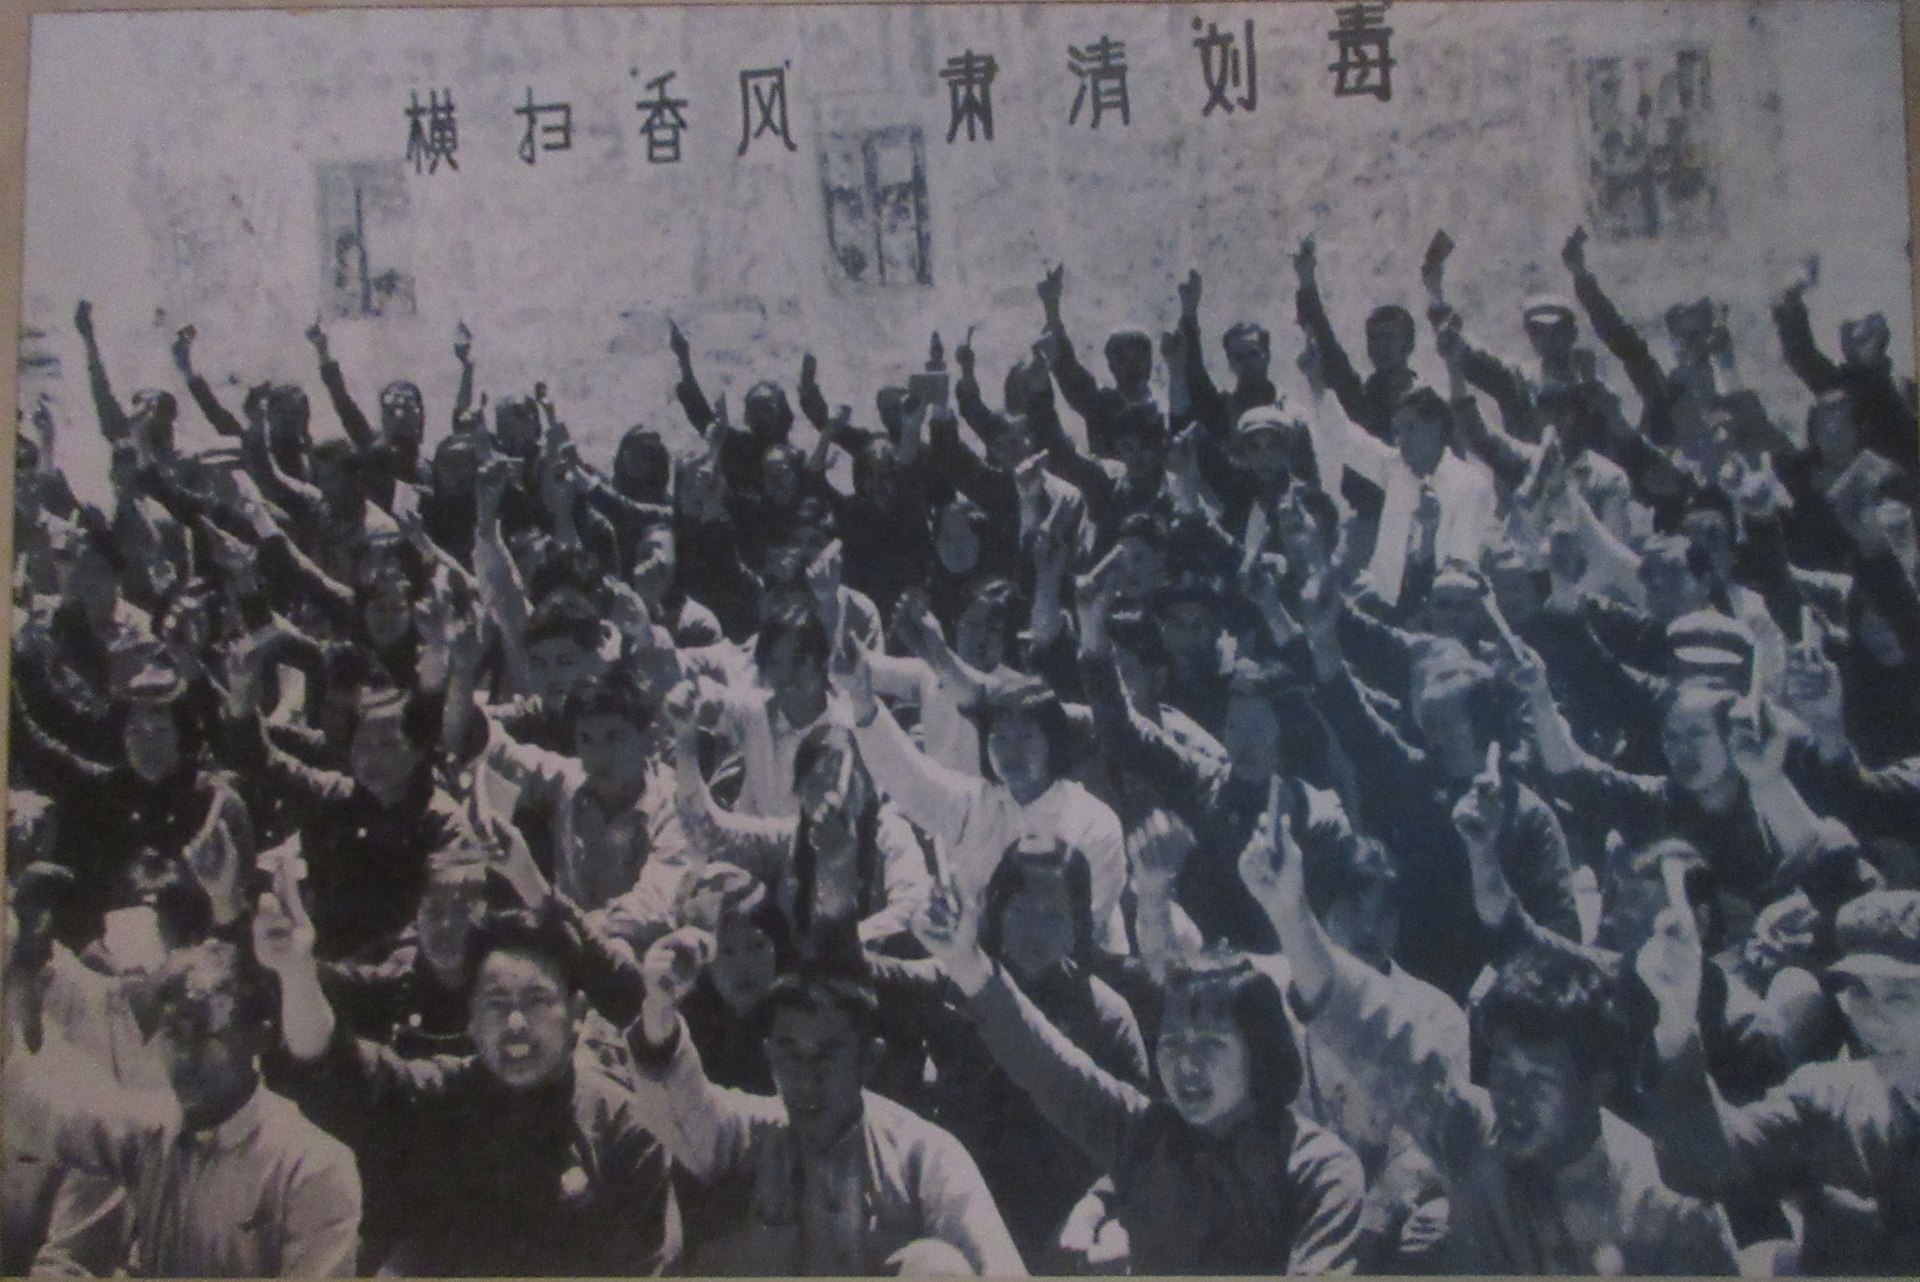 プロレタリア文化大革命：The Great Proletarian Cultural Revolution